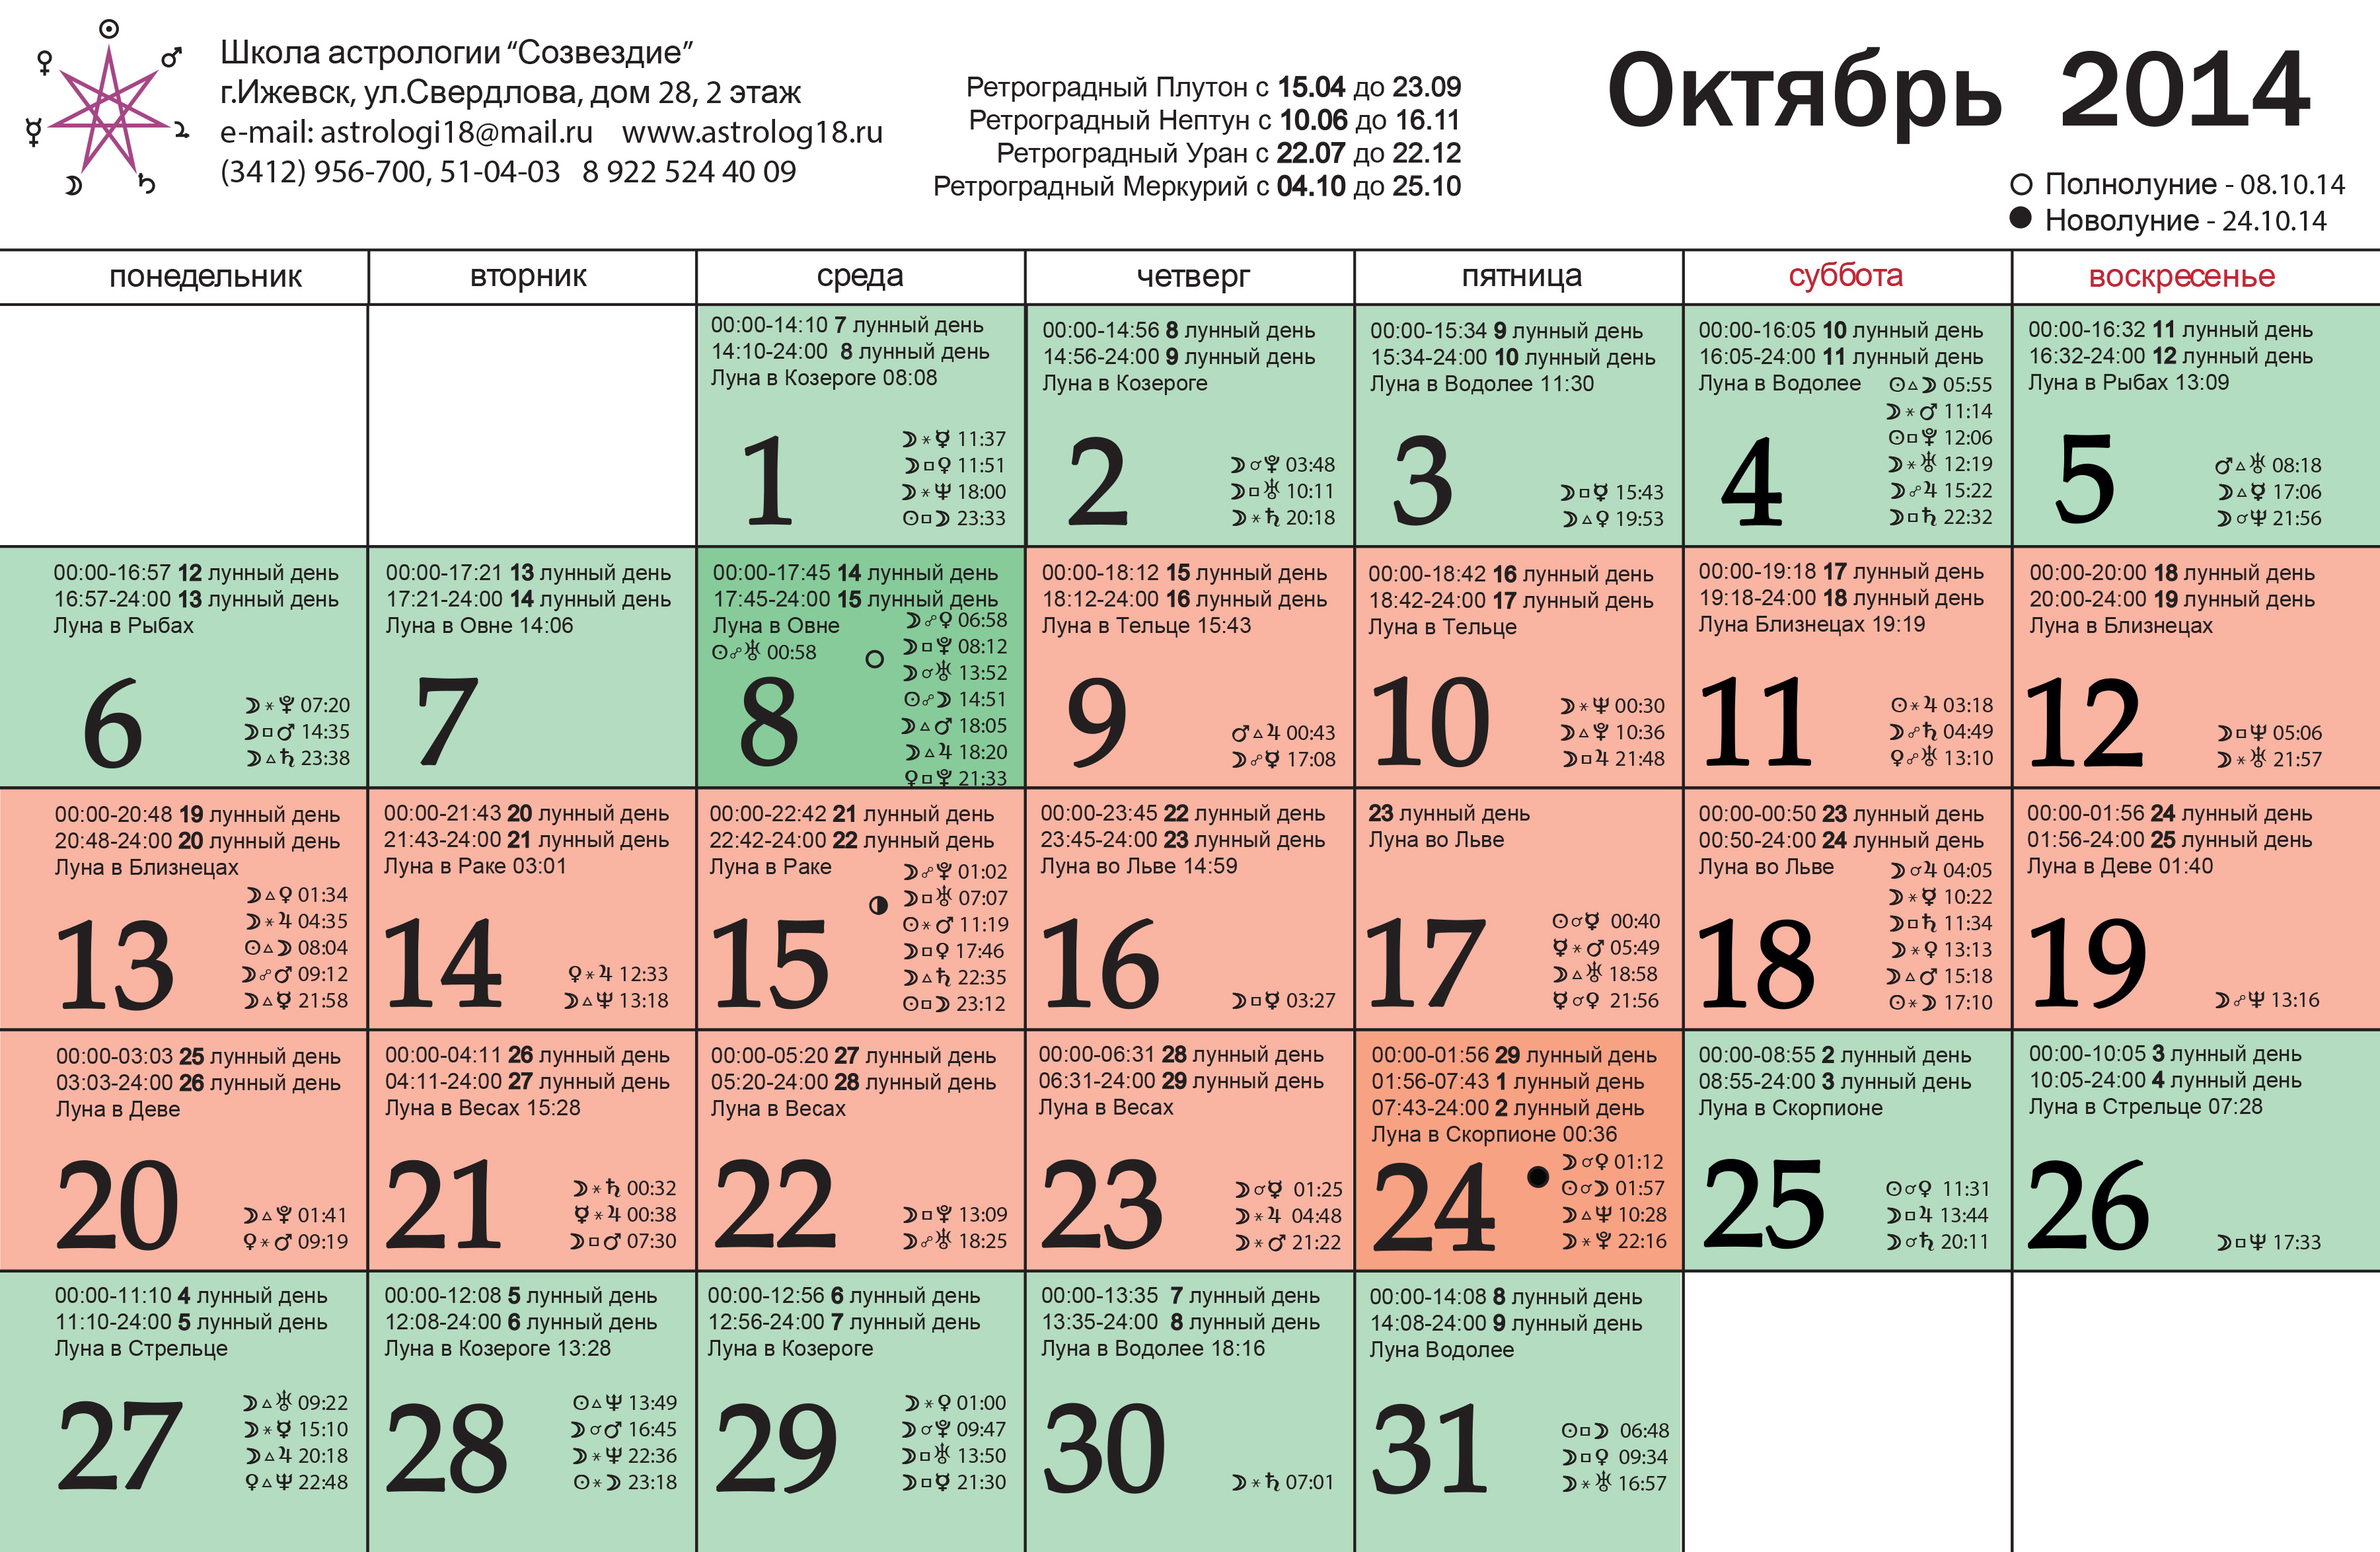 Лунный календарь по дням недели. Лунный календарь. Календарь годов по лунному календарю. Октябрь 2014 года календарь.